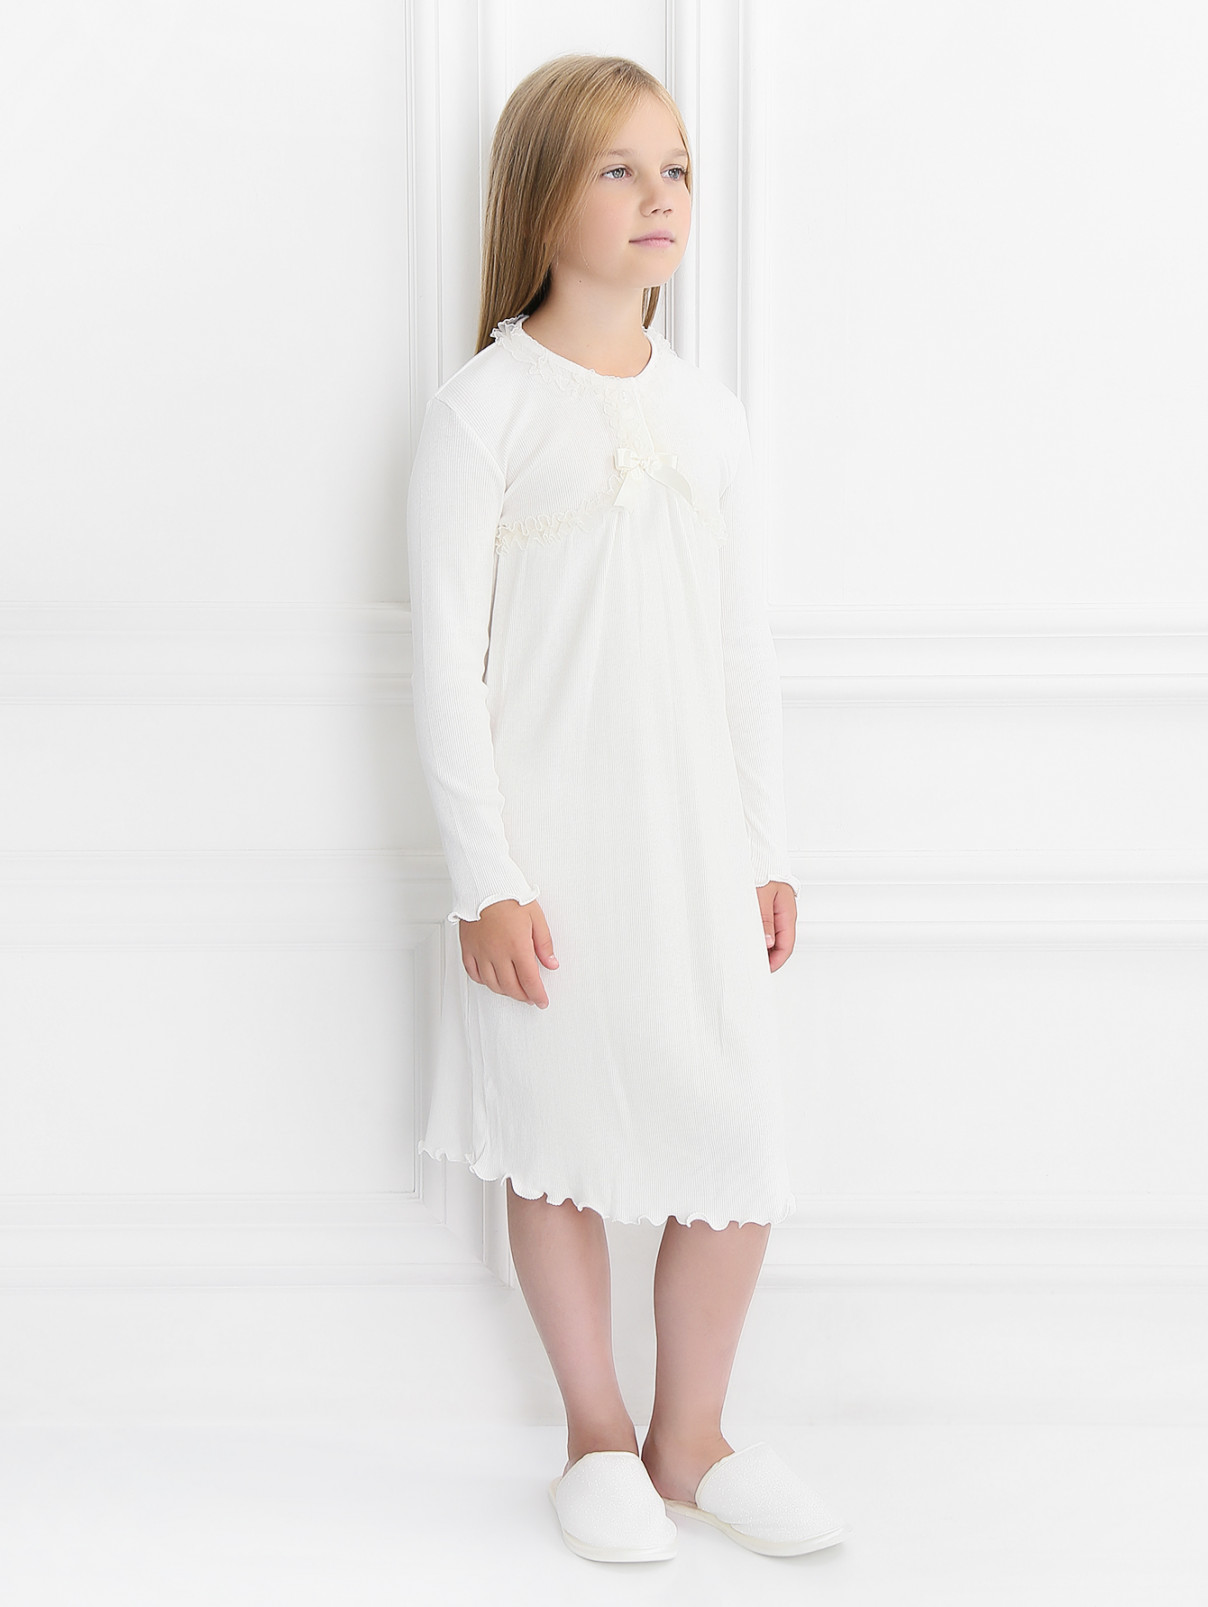 Ночная трикотажная сорочка с кружевными вставками Giottino  –  Модель Общий вид  – Цвет:  Белый